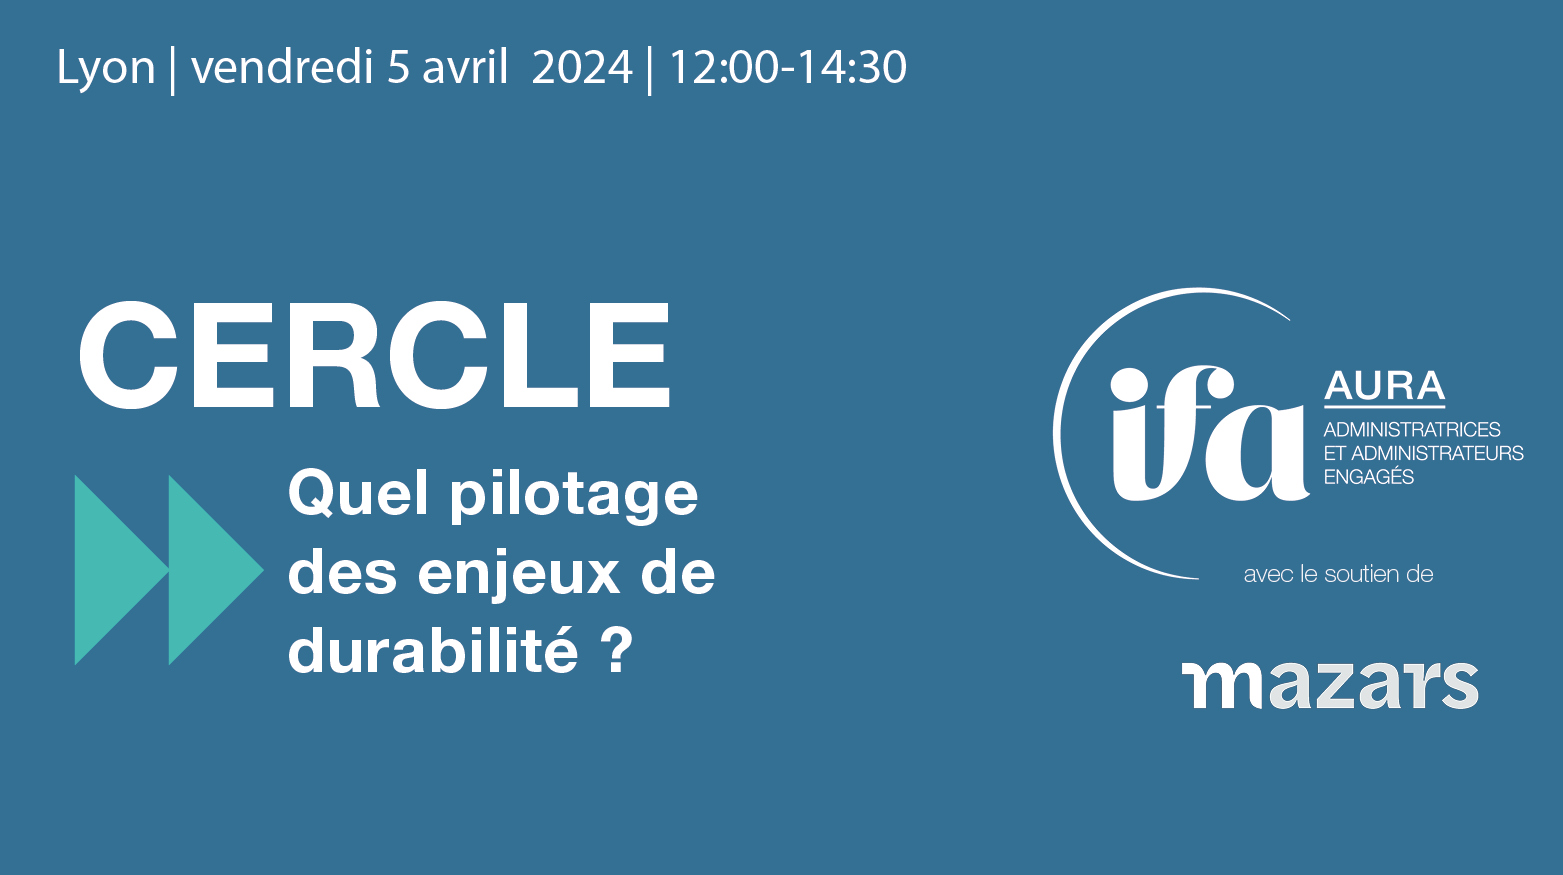 Cercle IFA AURA à Lyon | 5 avril 2024 | Quel pilotage des enjeux de durabilité ?